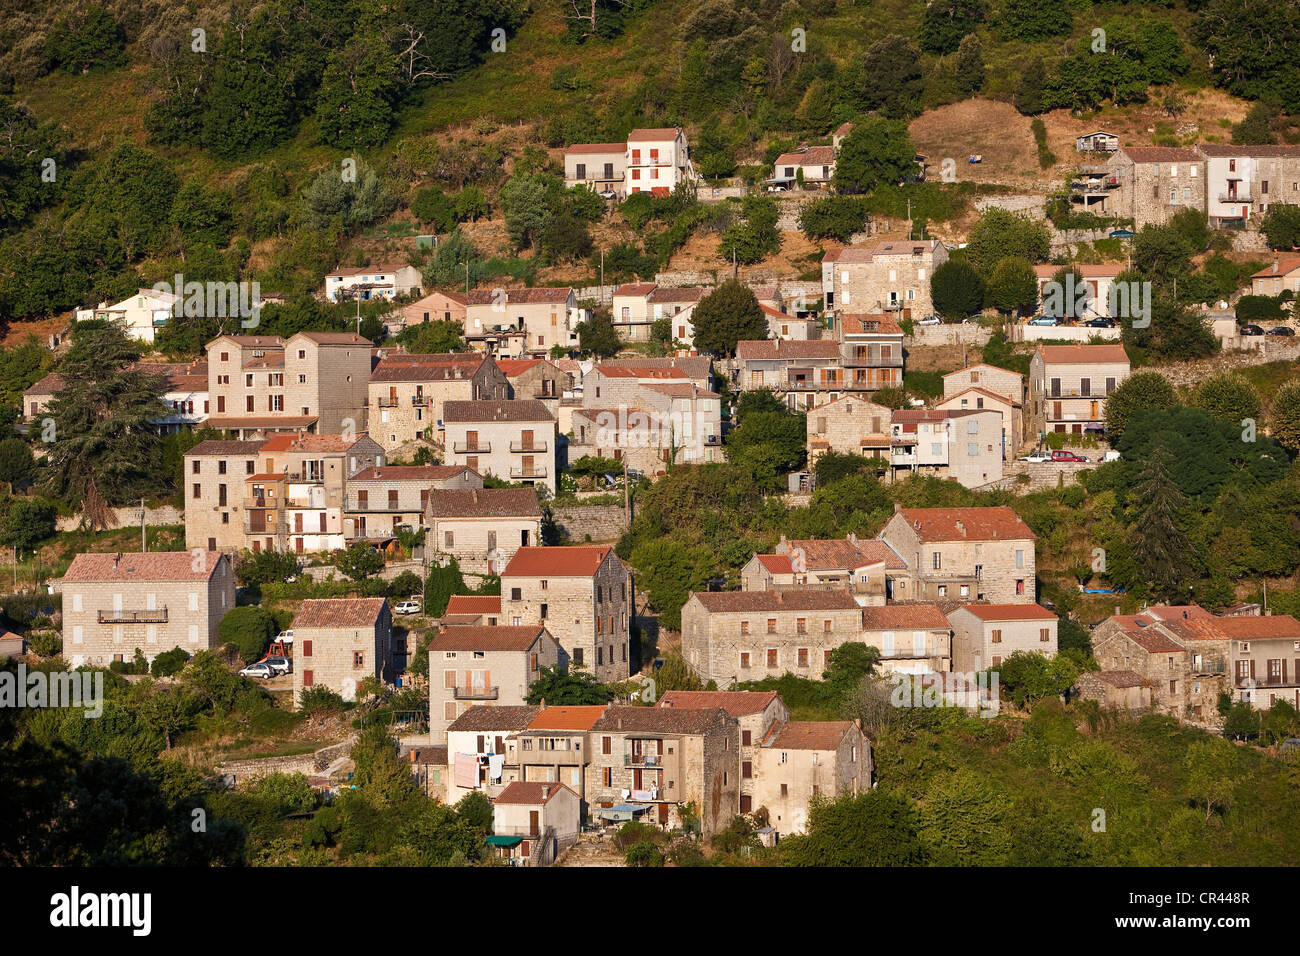 France, Corse du Sud, Levie village Stock Photo